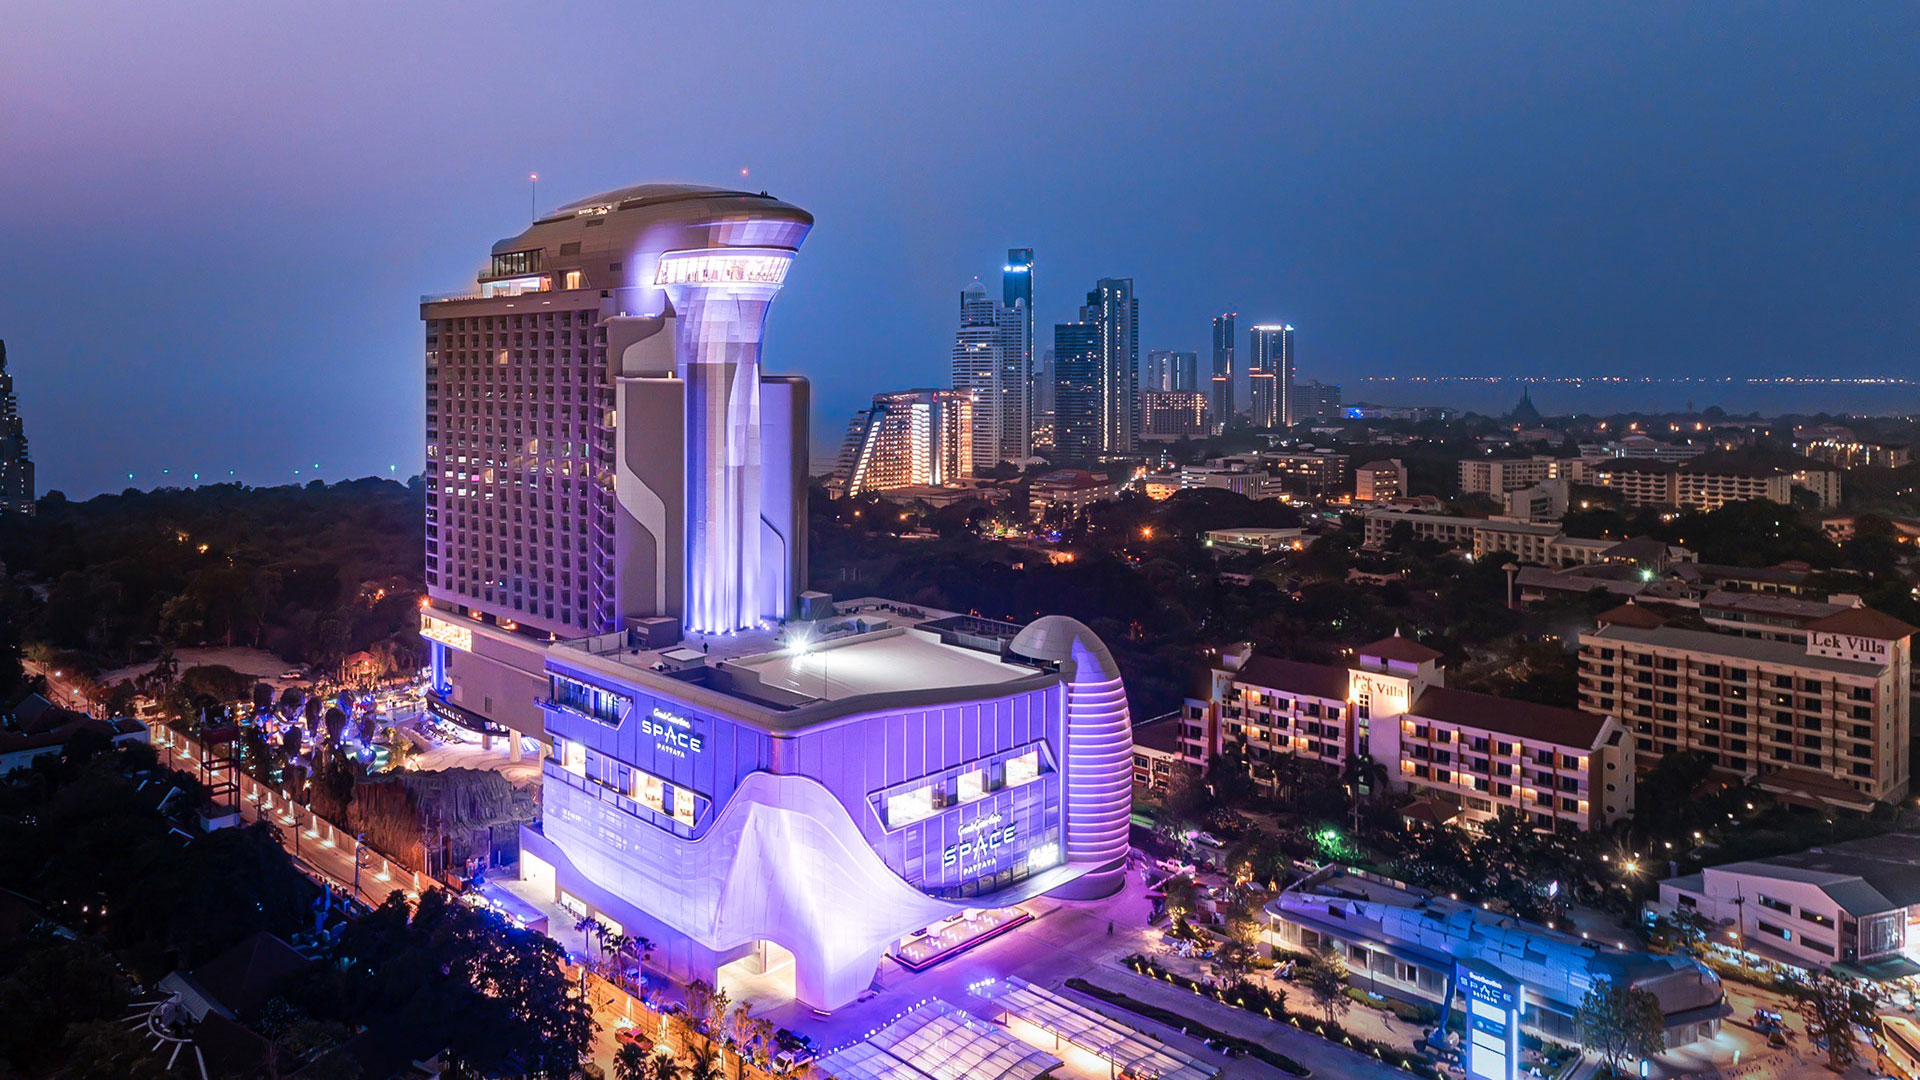 Hoteles del mundo: un hotel de temática espacial, Tailandia